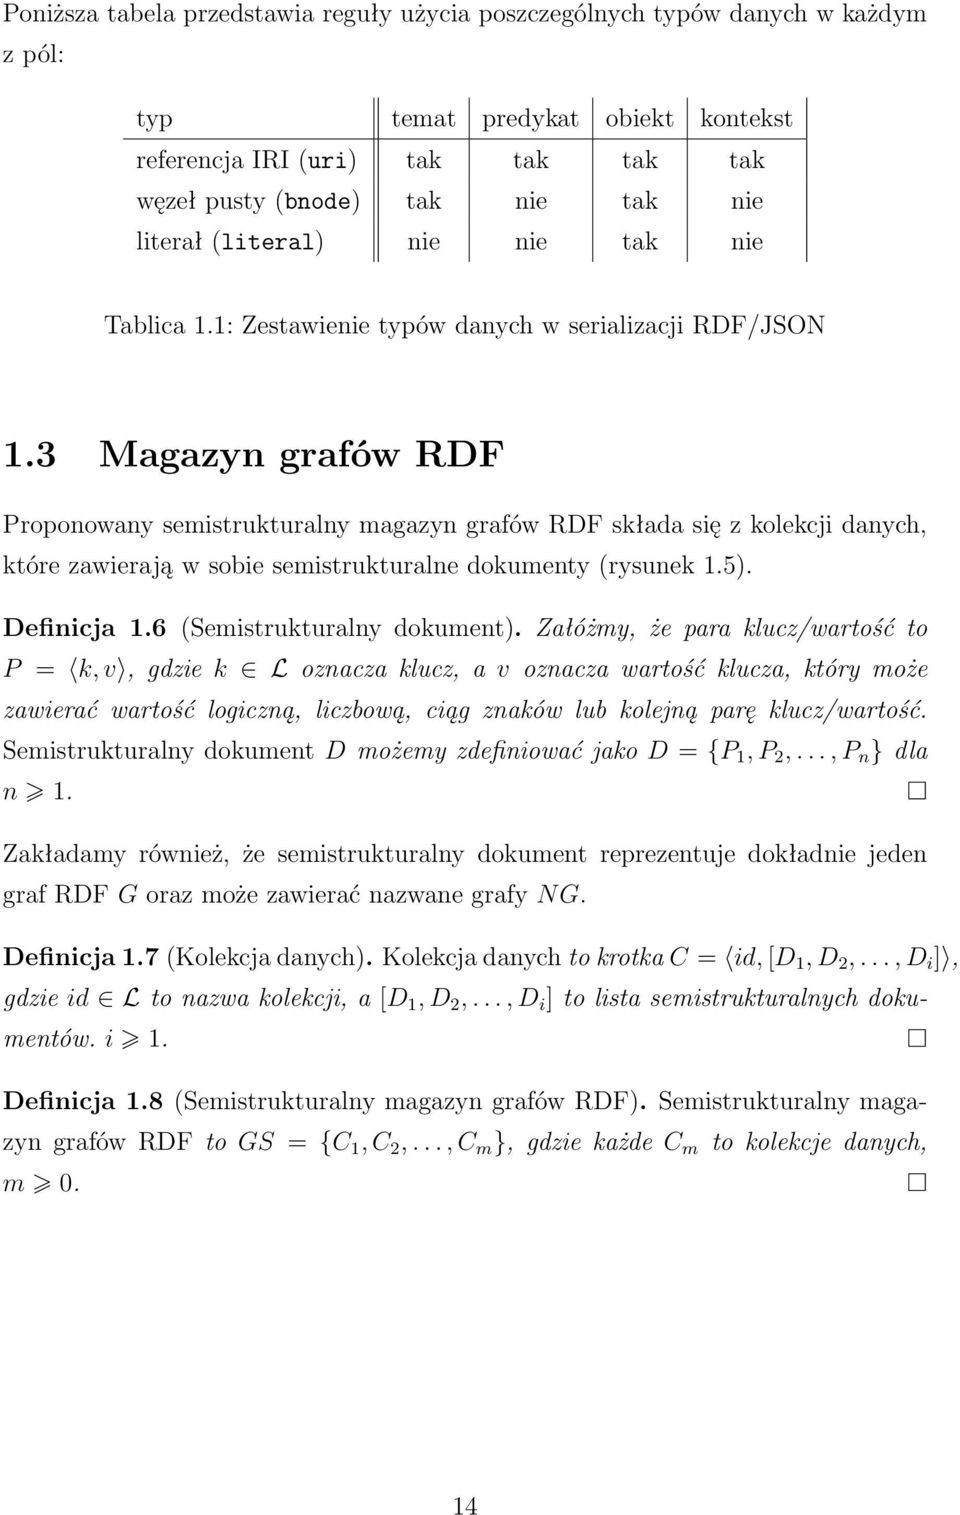 3 Magazyn grafów RDF Proponowany semistrukturalny magazyn grafów RDF składa się z kolekcji danych, które zawierają w sobie semistrukturalne dokumenty (rysunek 1.5). Definicja 1.